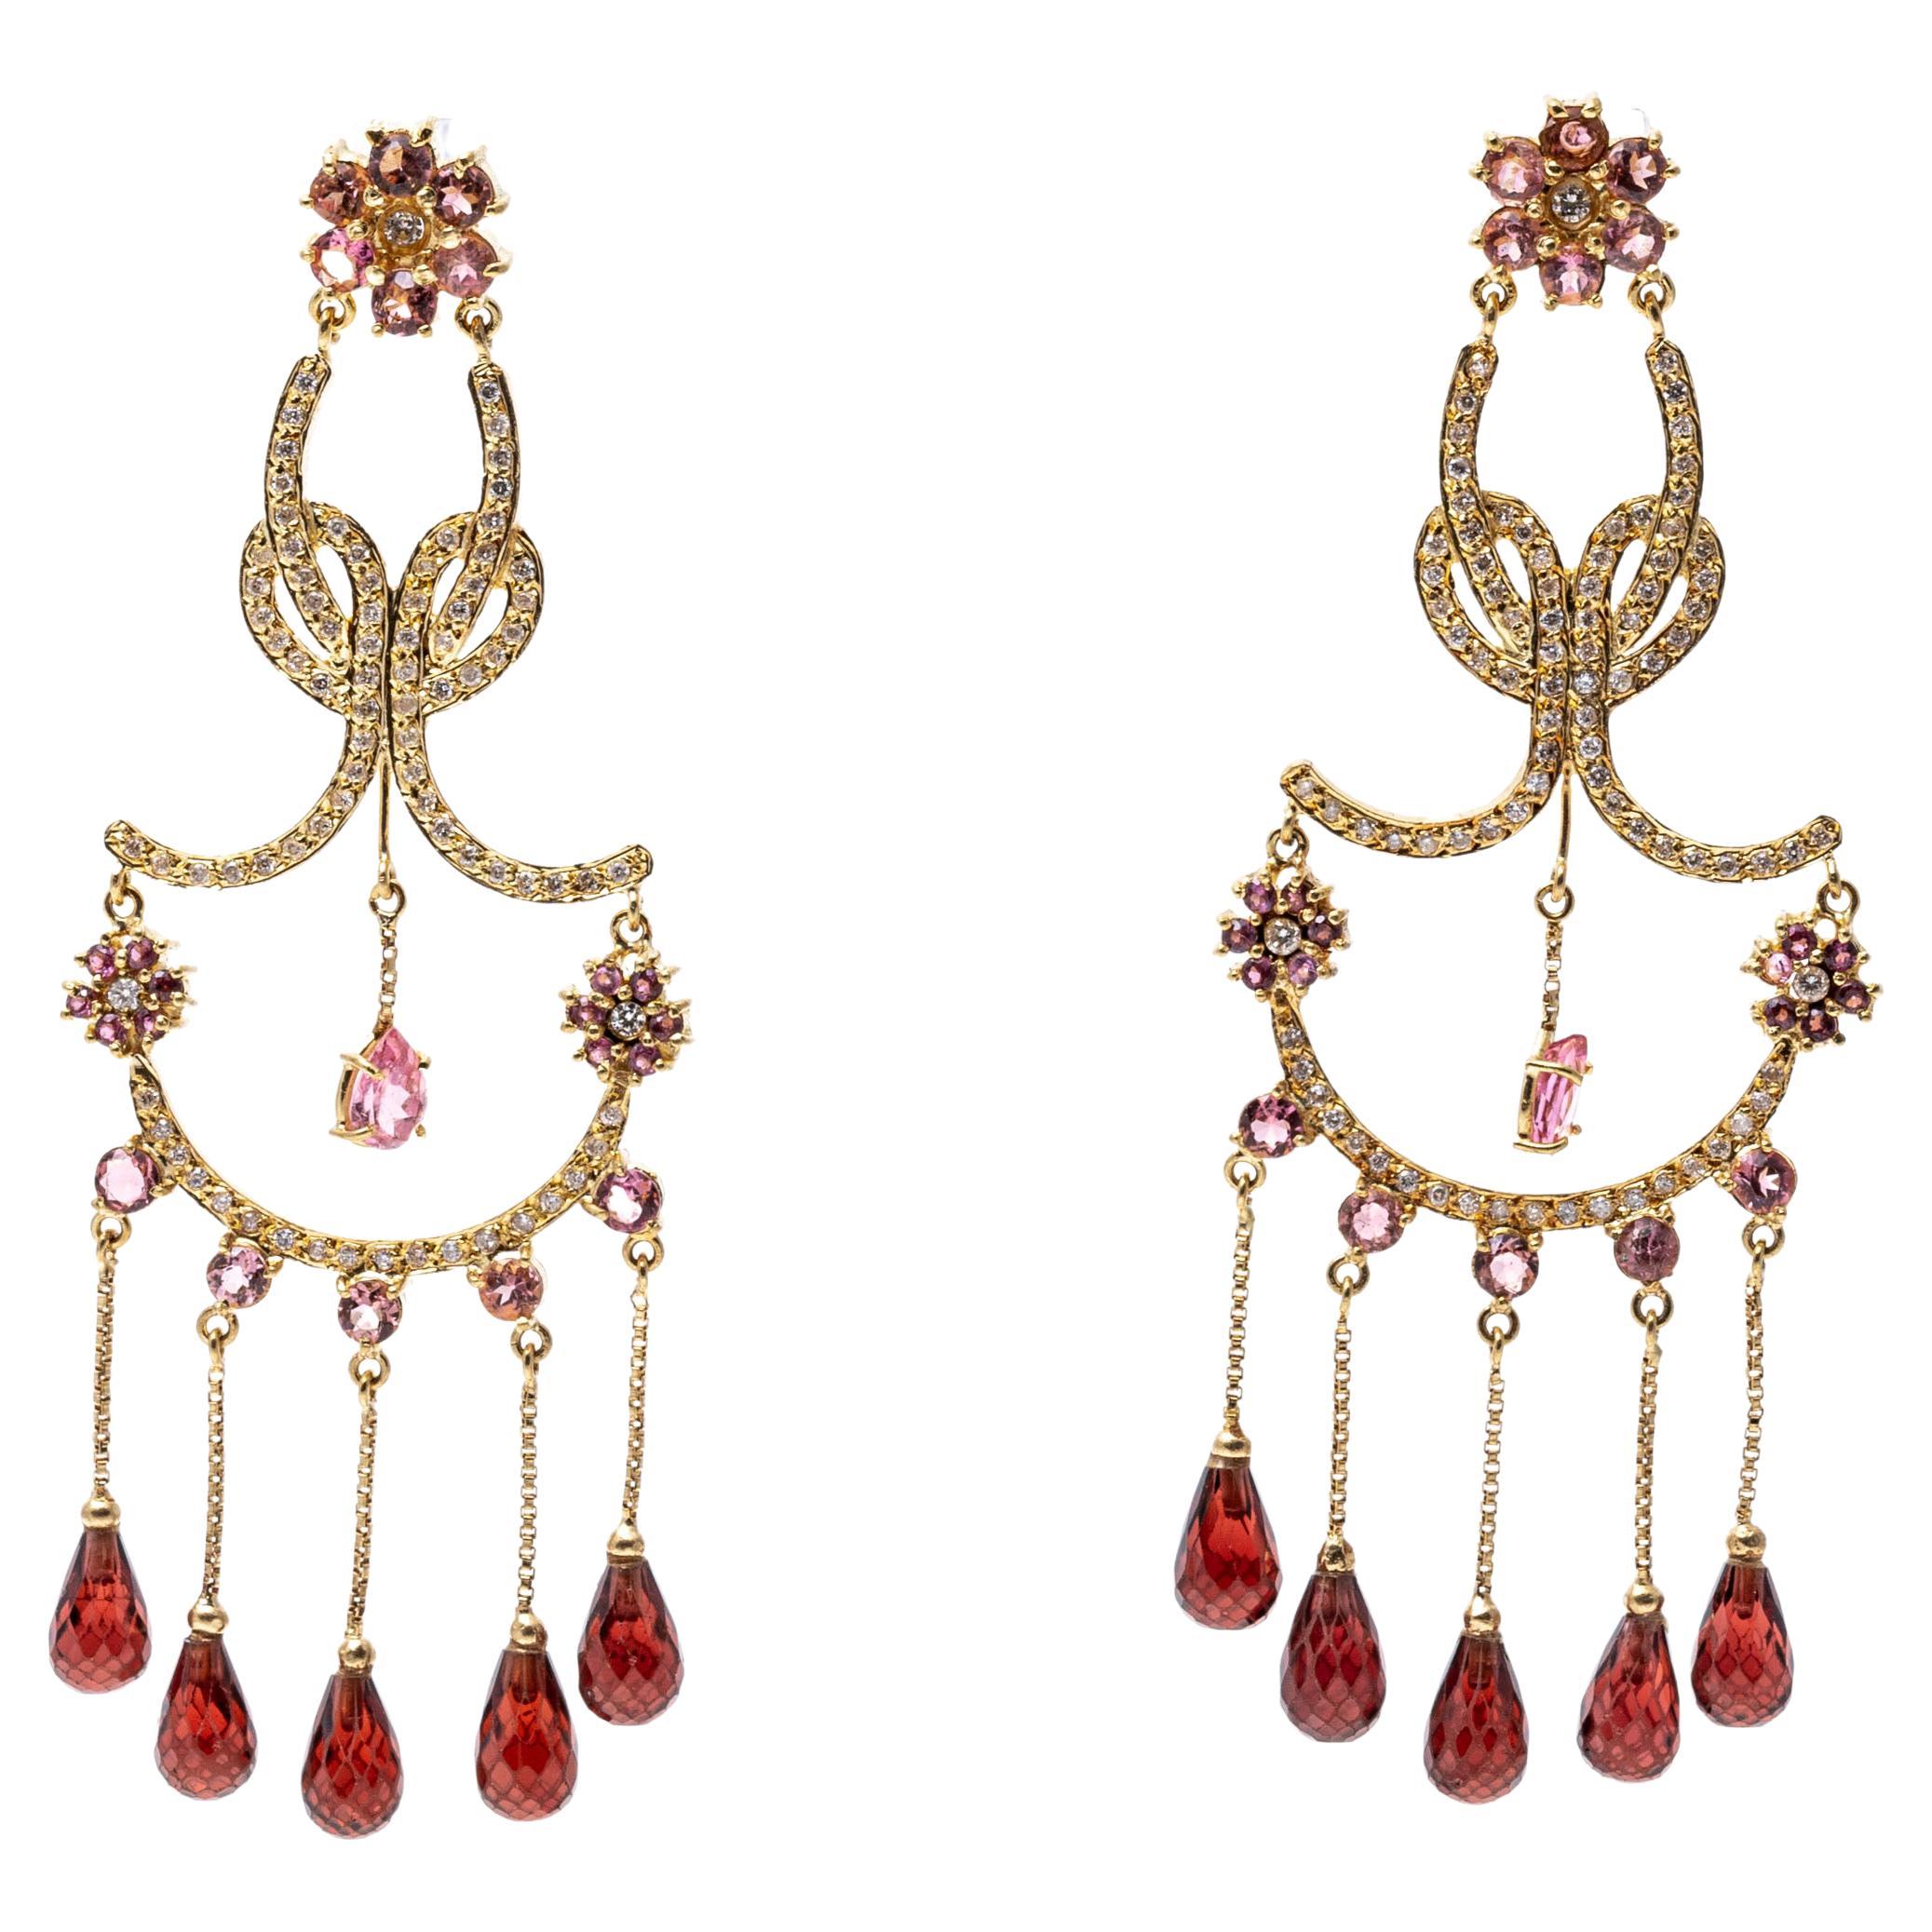 Kronleuchter-Ohrringe aus 18 Karat Gold und Diamanten, Granat und rosa Turmalin